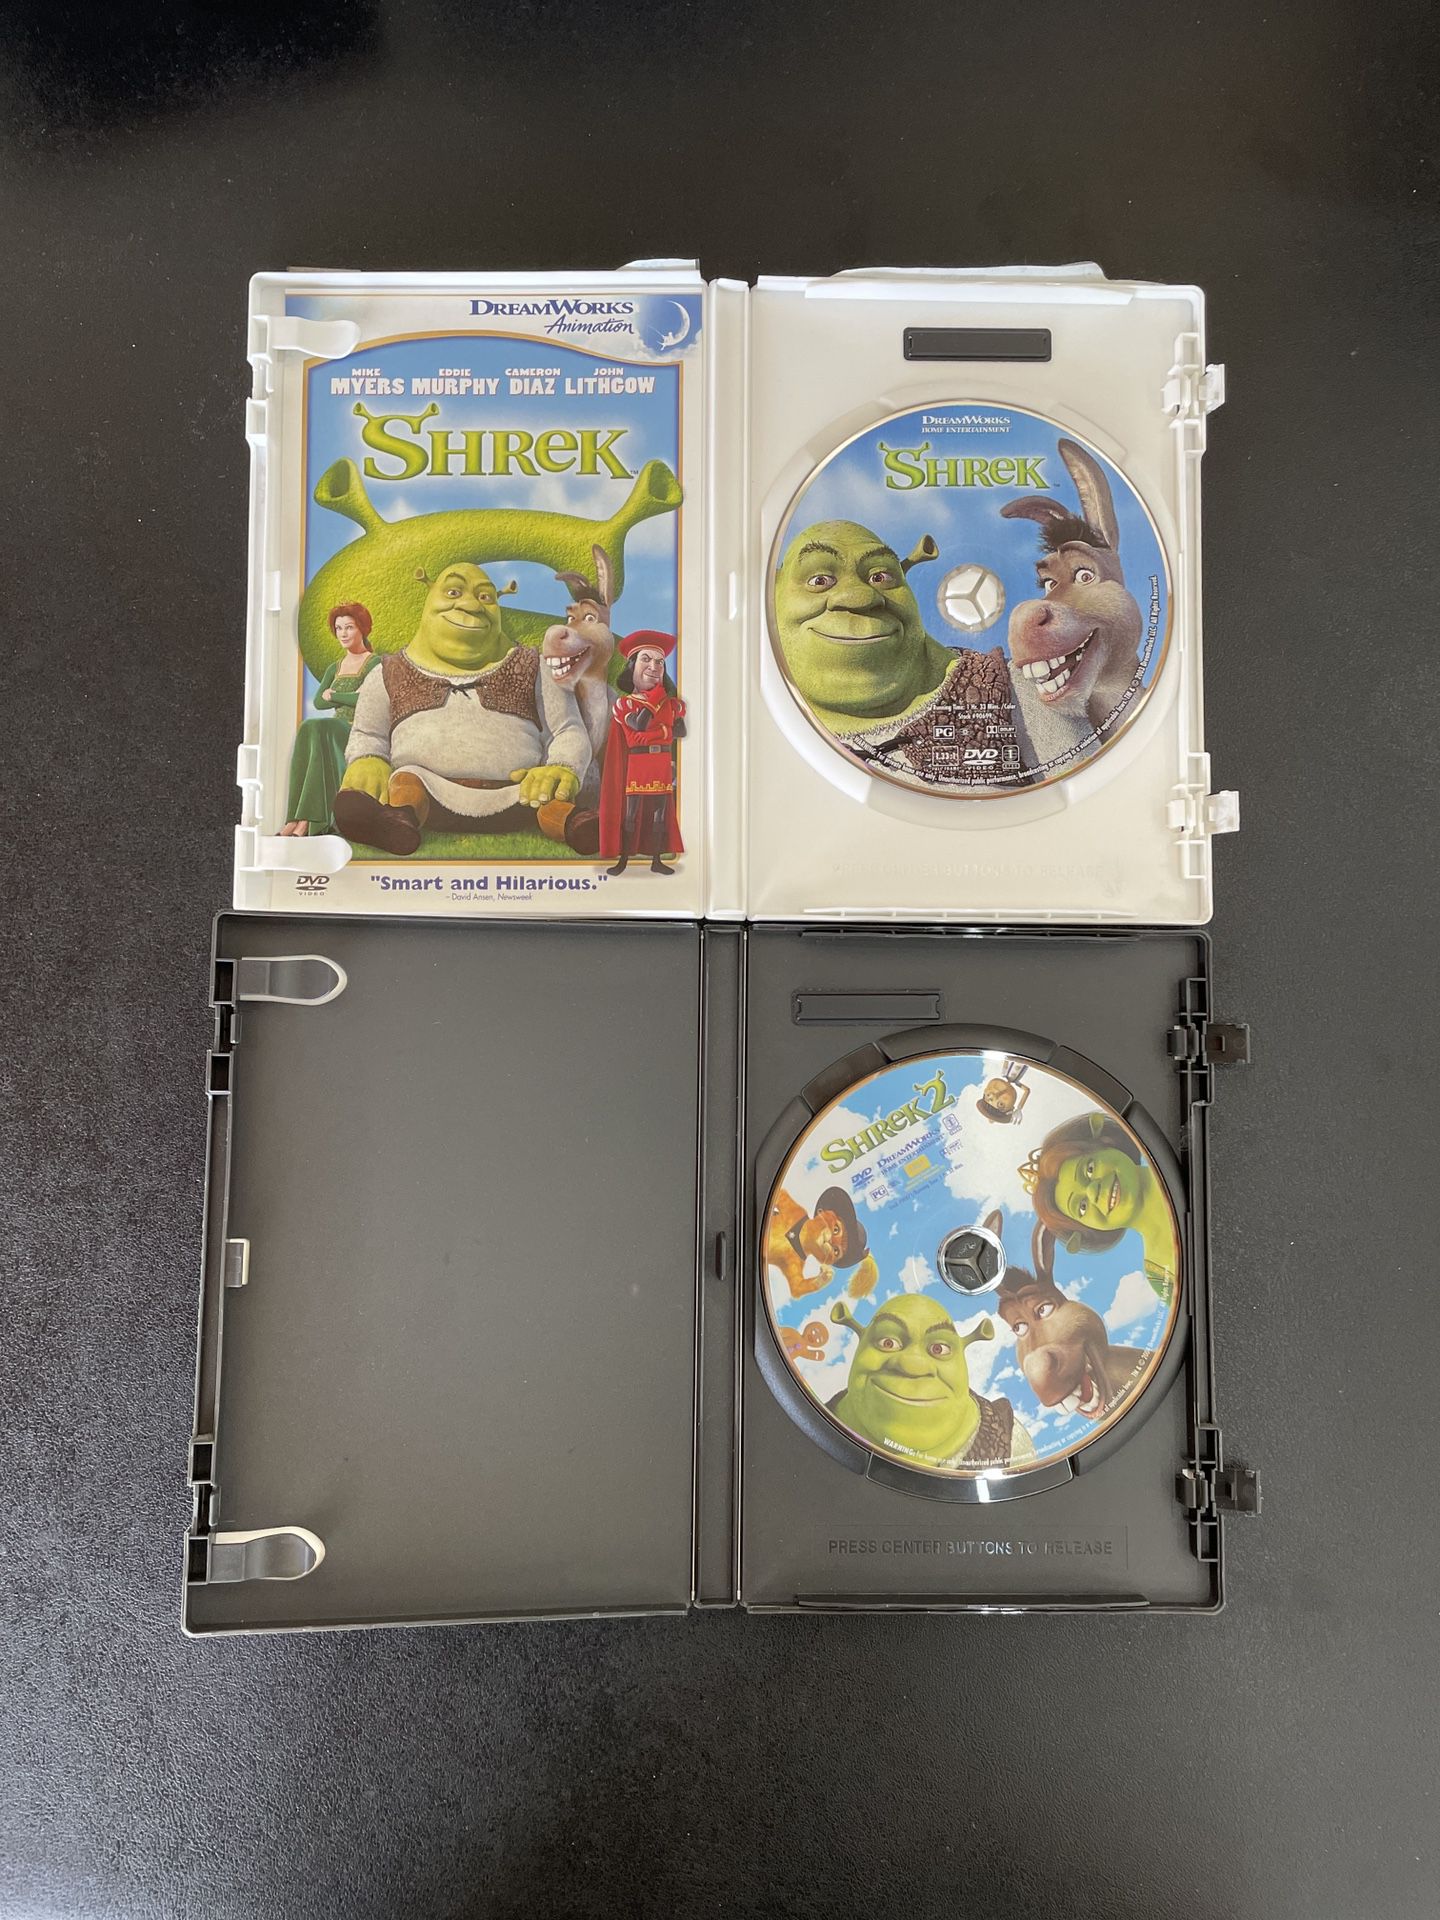 Shrek 1 & 2 DVD’s